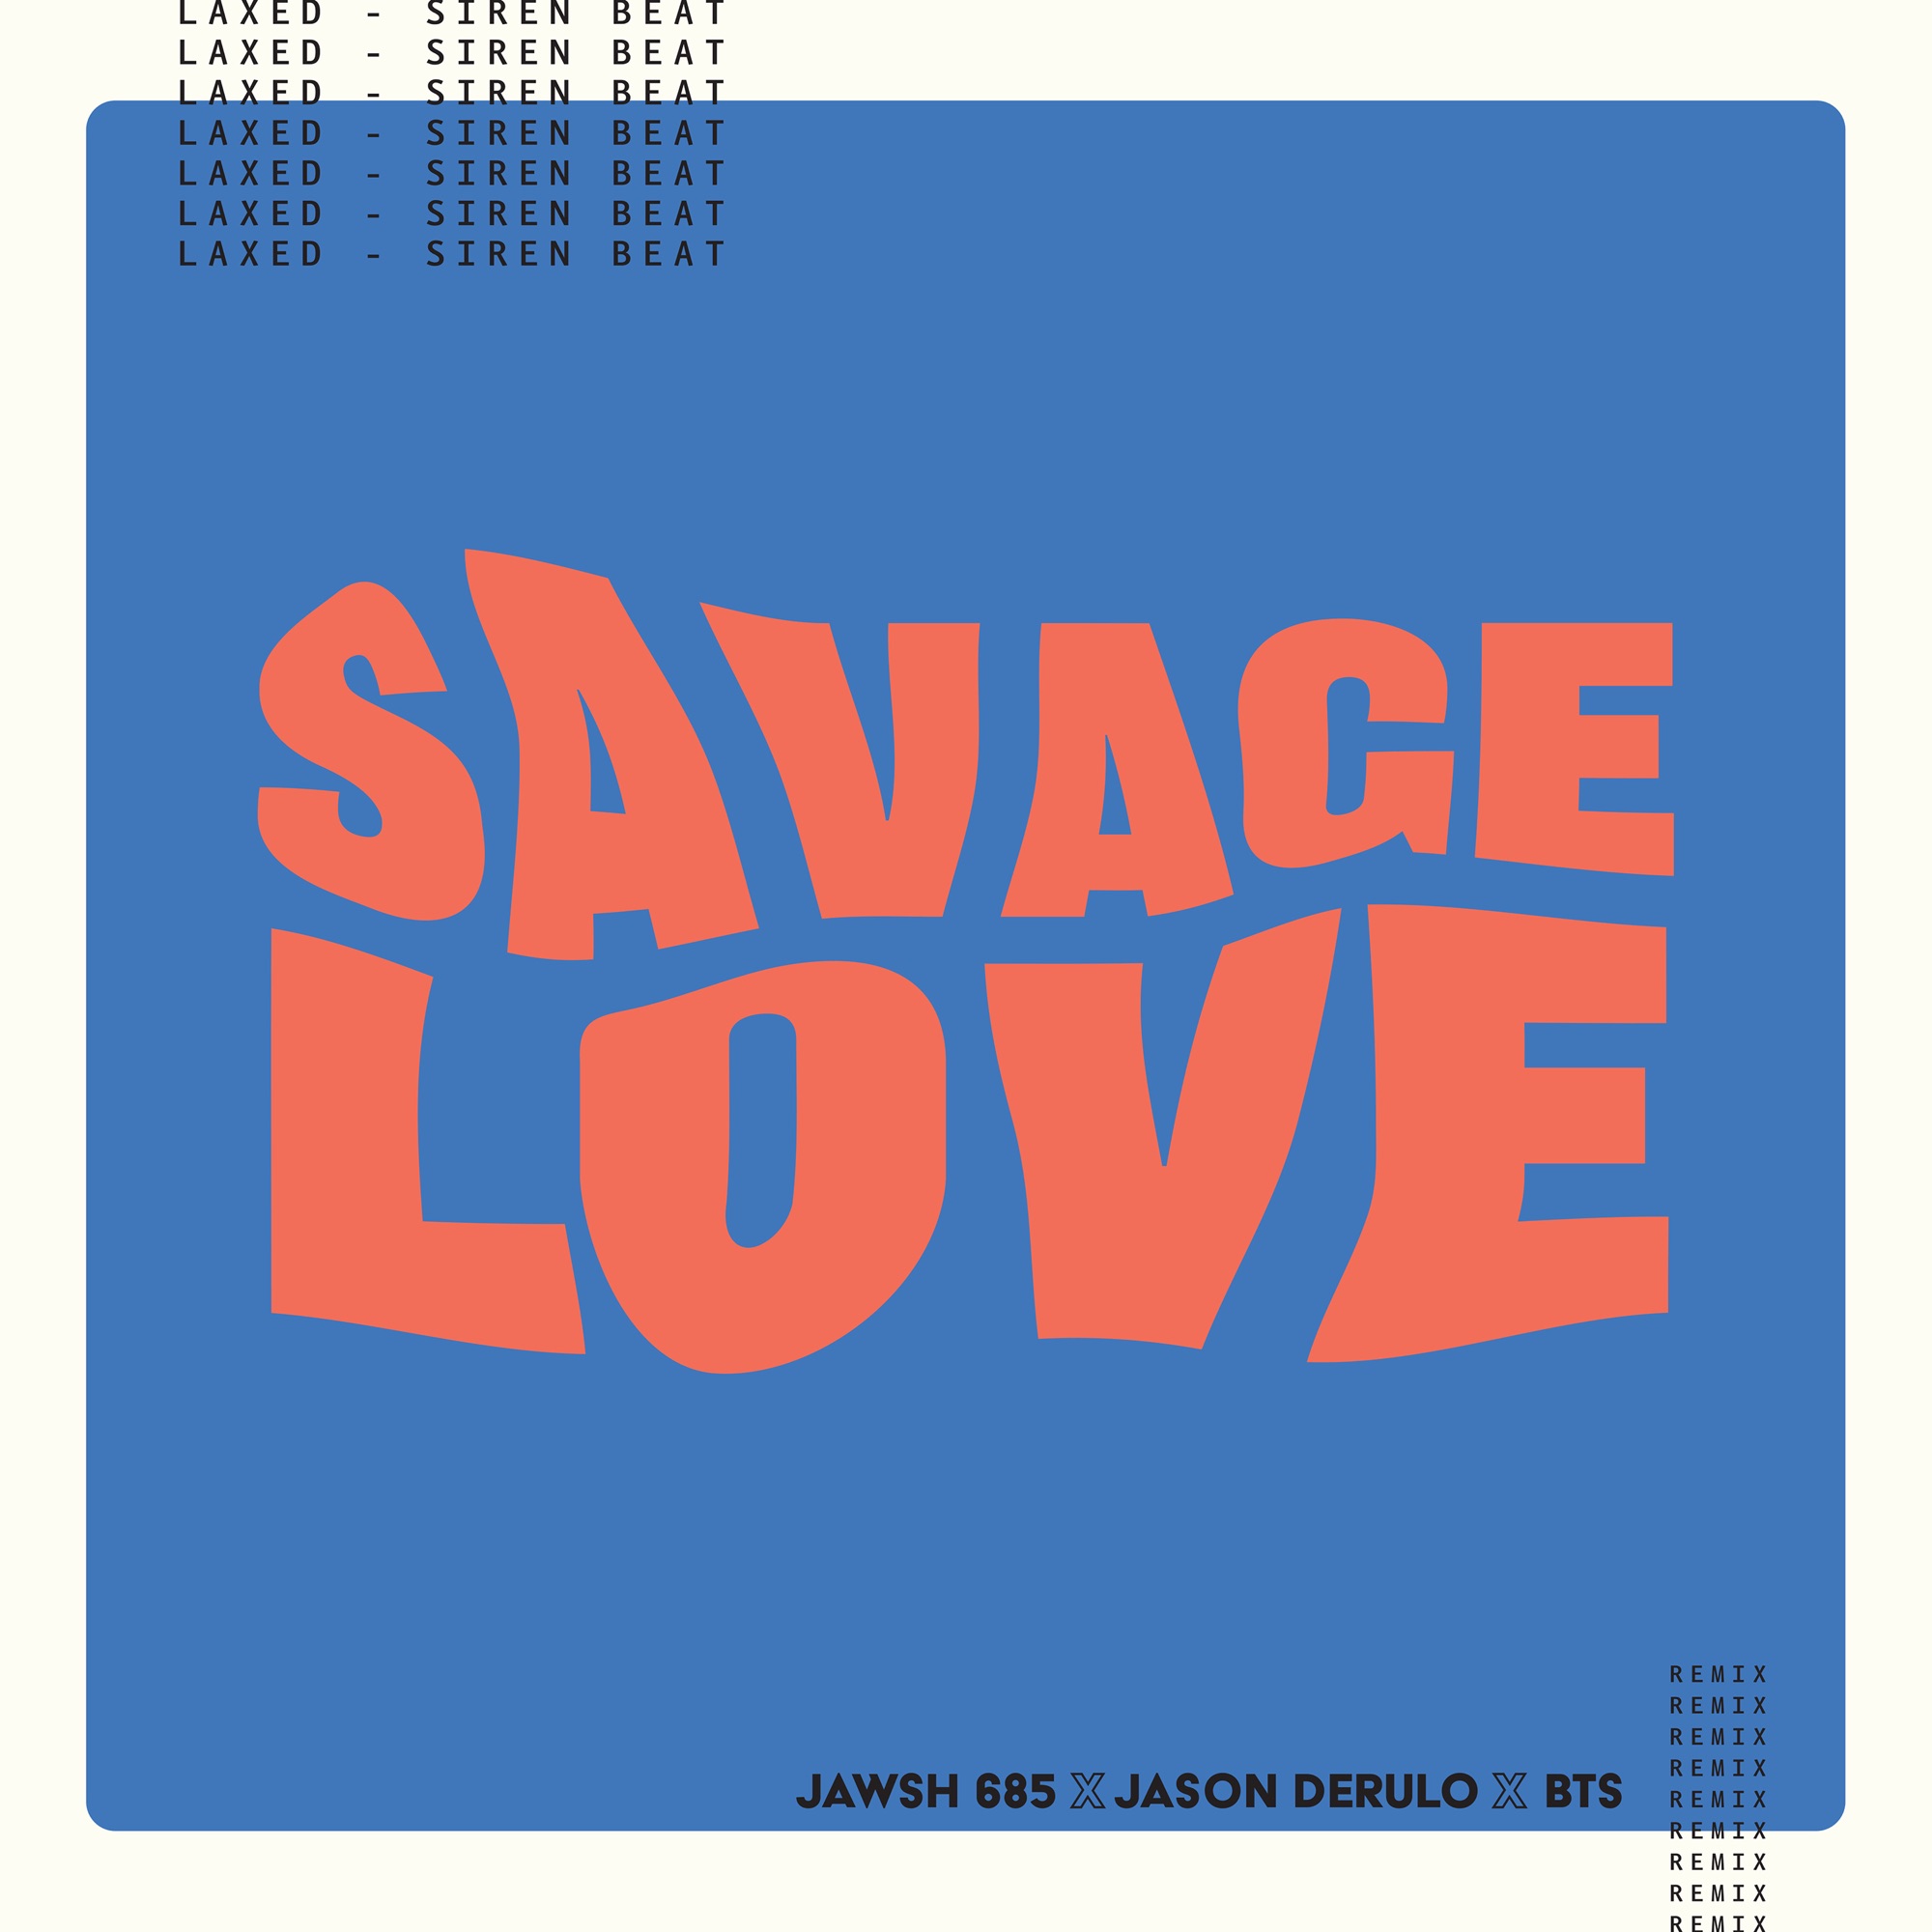 Jawsh 685, Jason Derulo & BTS - Savage Love (Laxed - Siren Beat) [BTS Remix] - Single